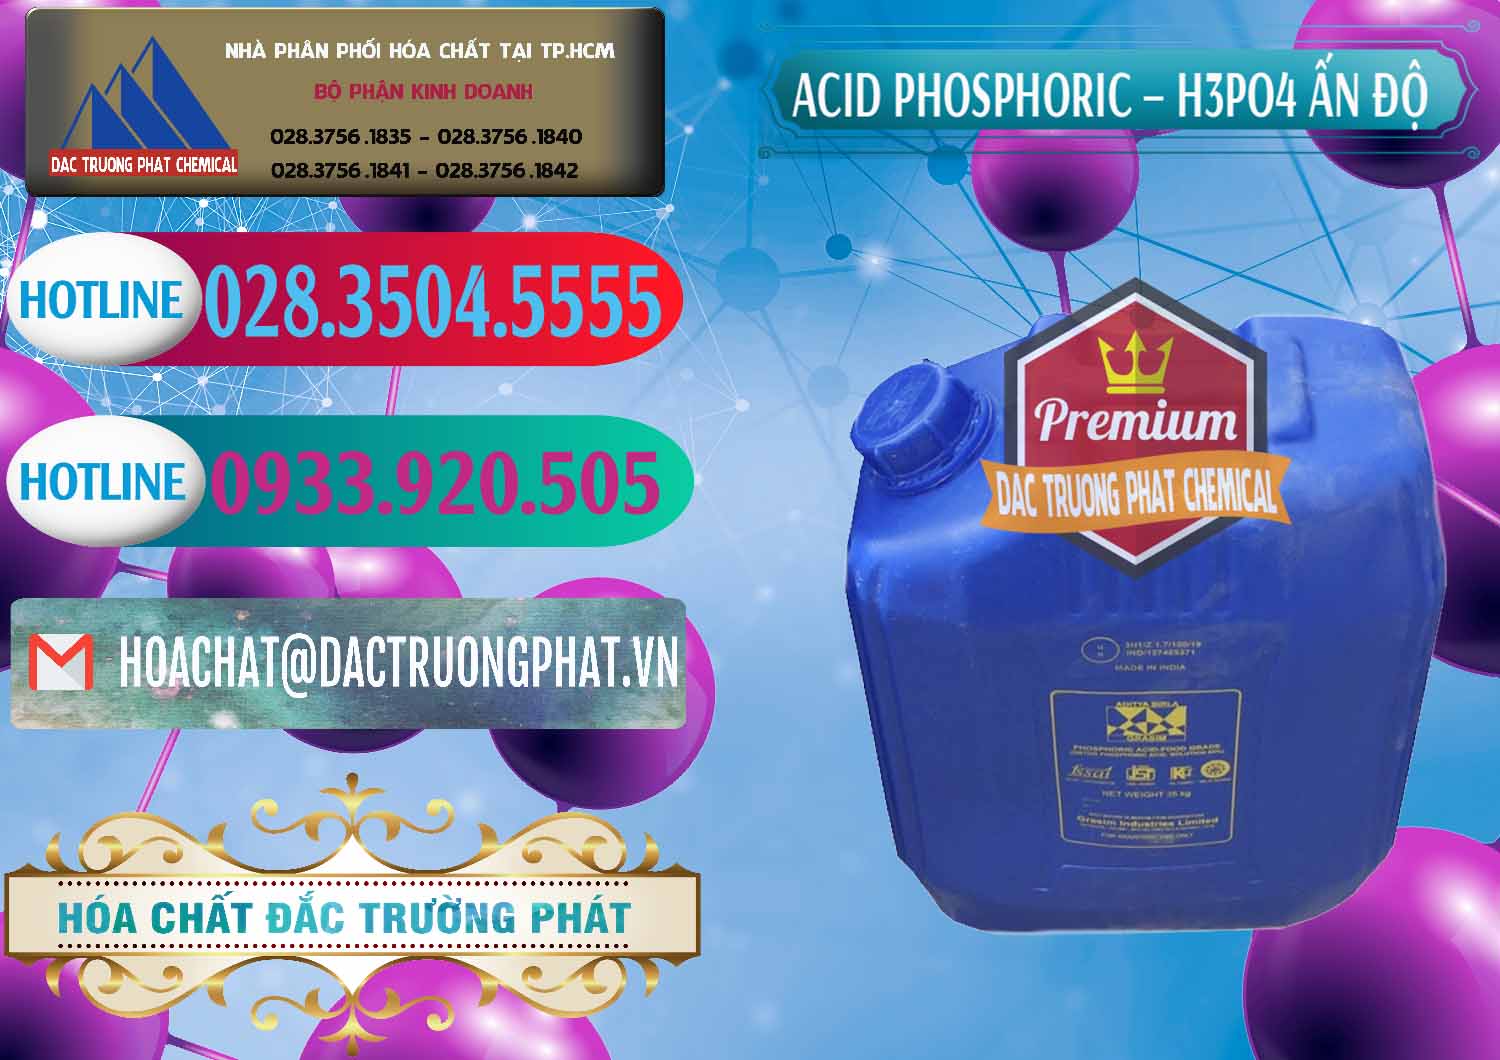 Nơi chuyên phân phối - bán Axit Phosphoric H3PO4 85% Ấn Độ - 0350 - Cty chuyên cung cấp - bán hóa chất tại TP.HCM - truongphat.vn